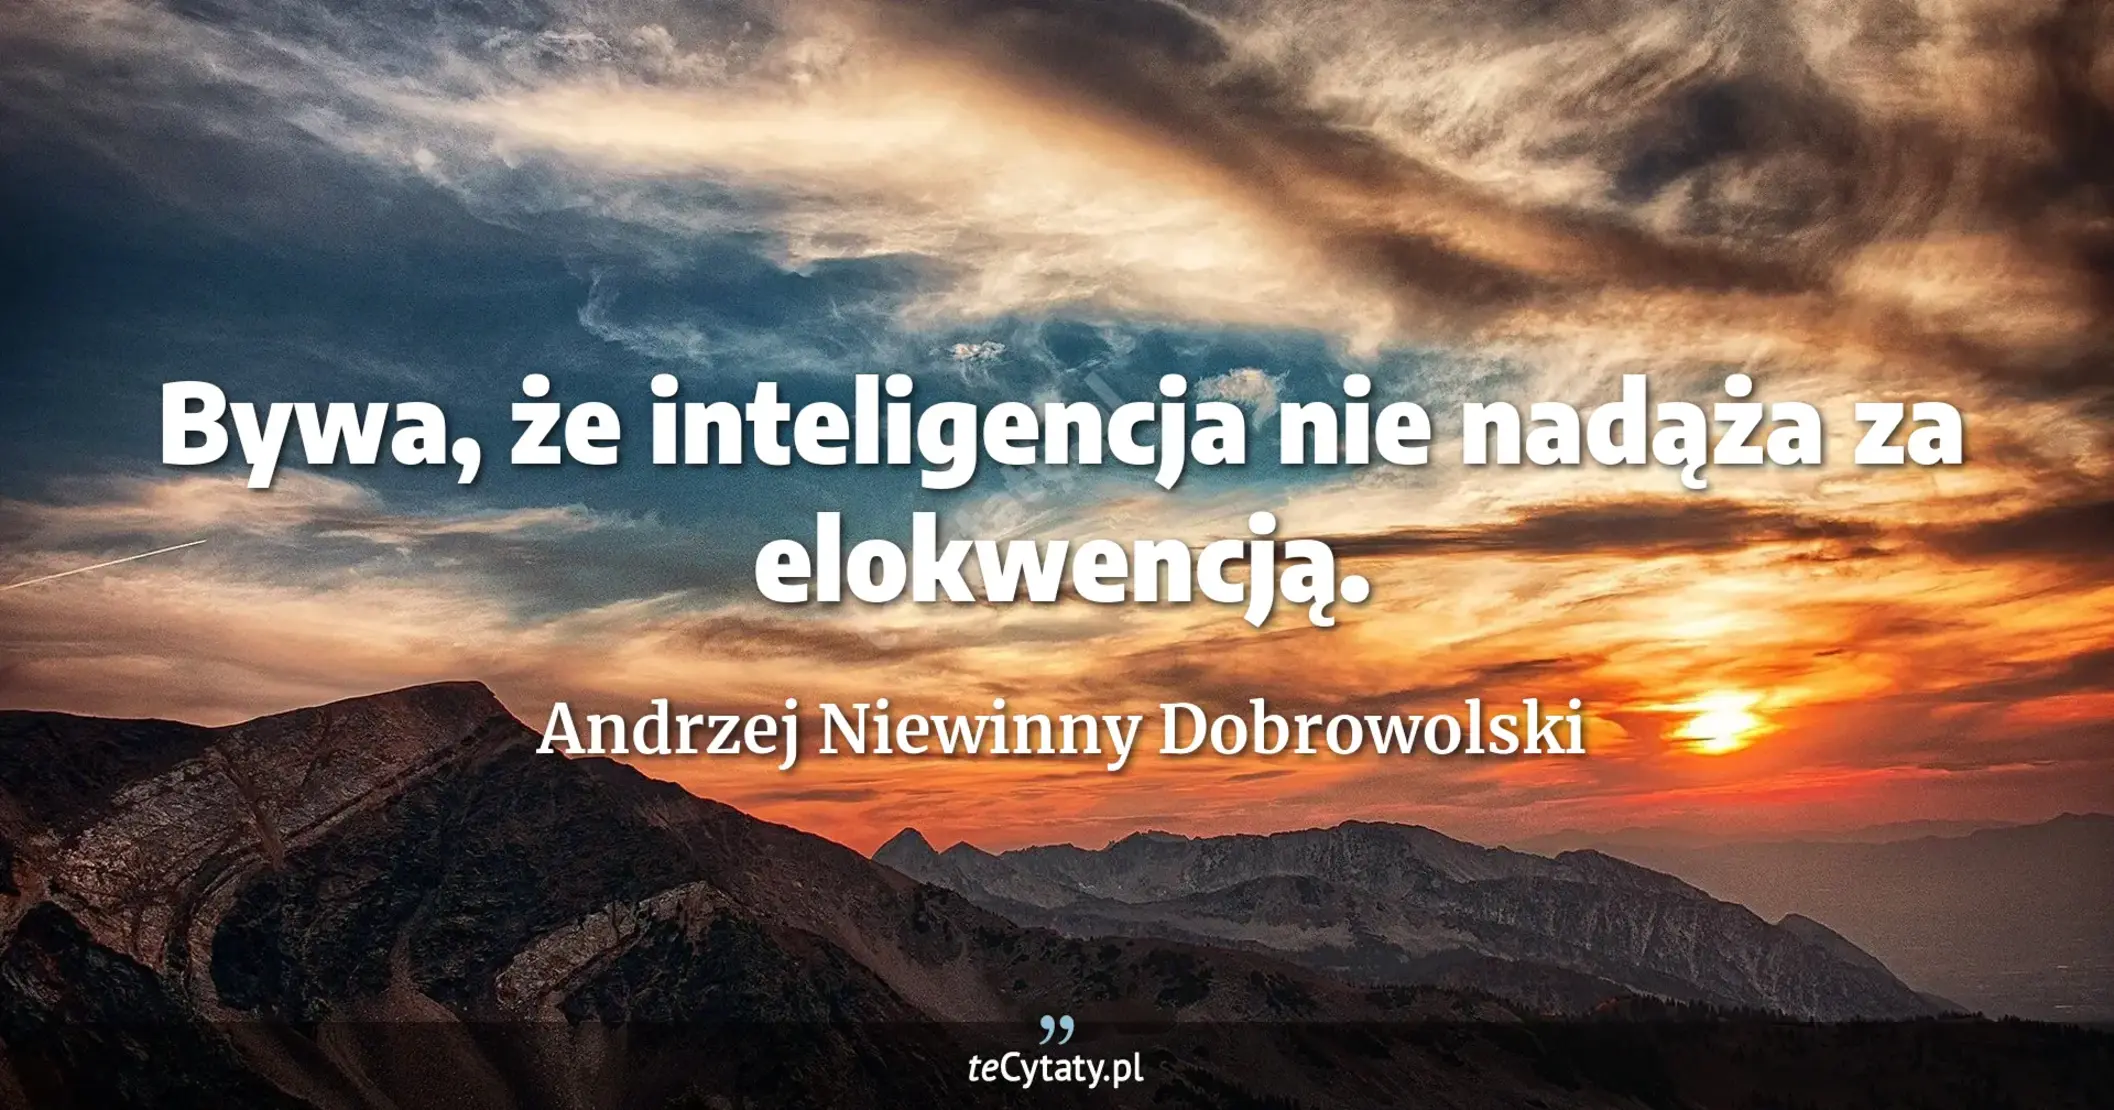 Bywa, że inteligencja nie nadąża za elokwencją. - Andrzej Niewinny Dobrowolski